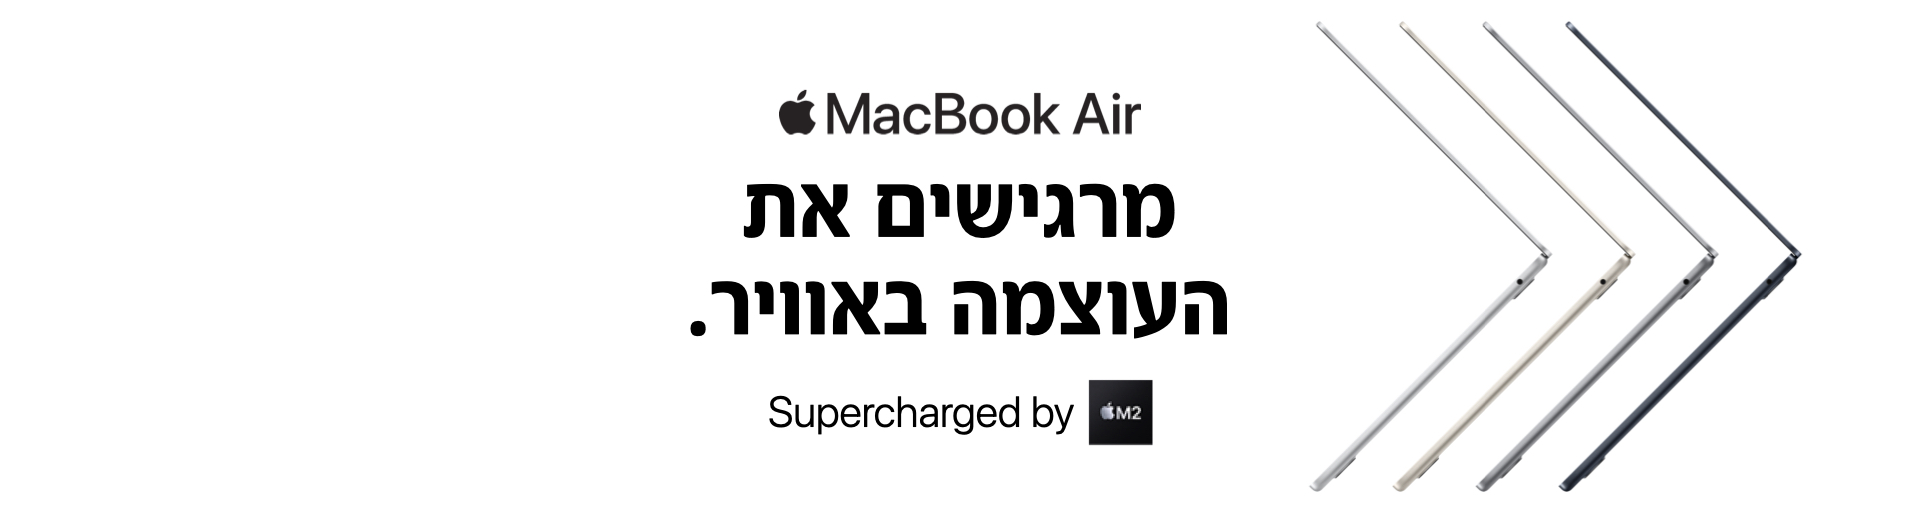 MacBook Air. מרגישים את העוצמה באוויר. Supercharged by M2